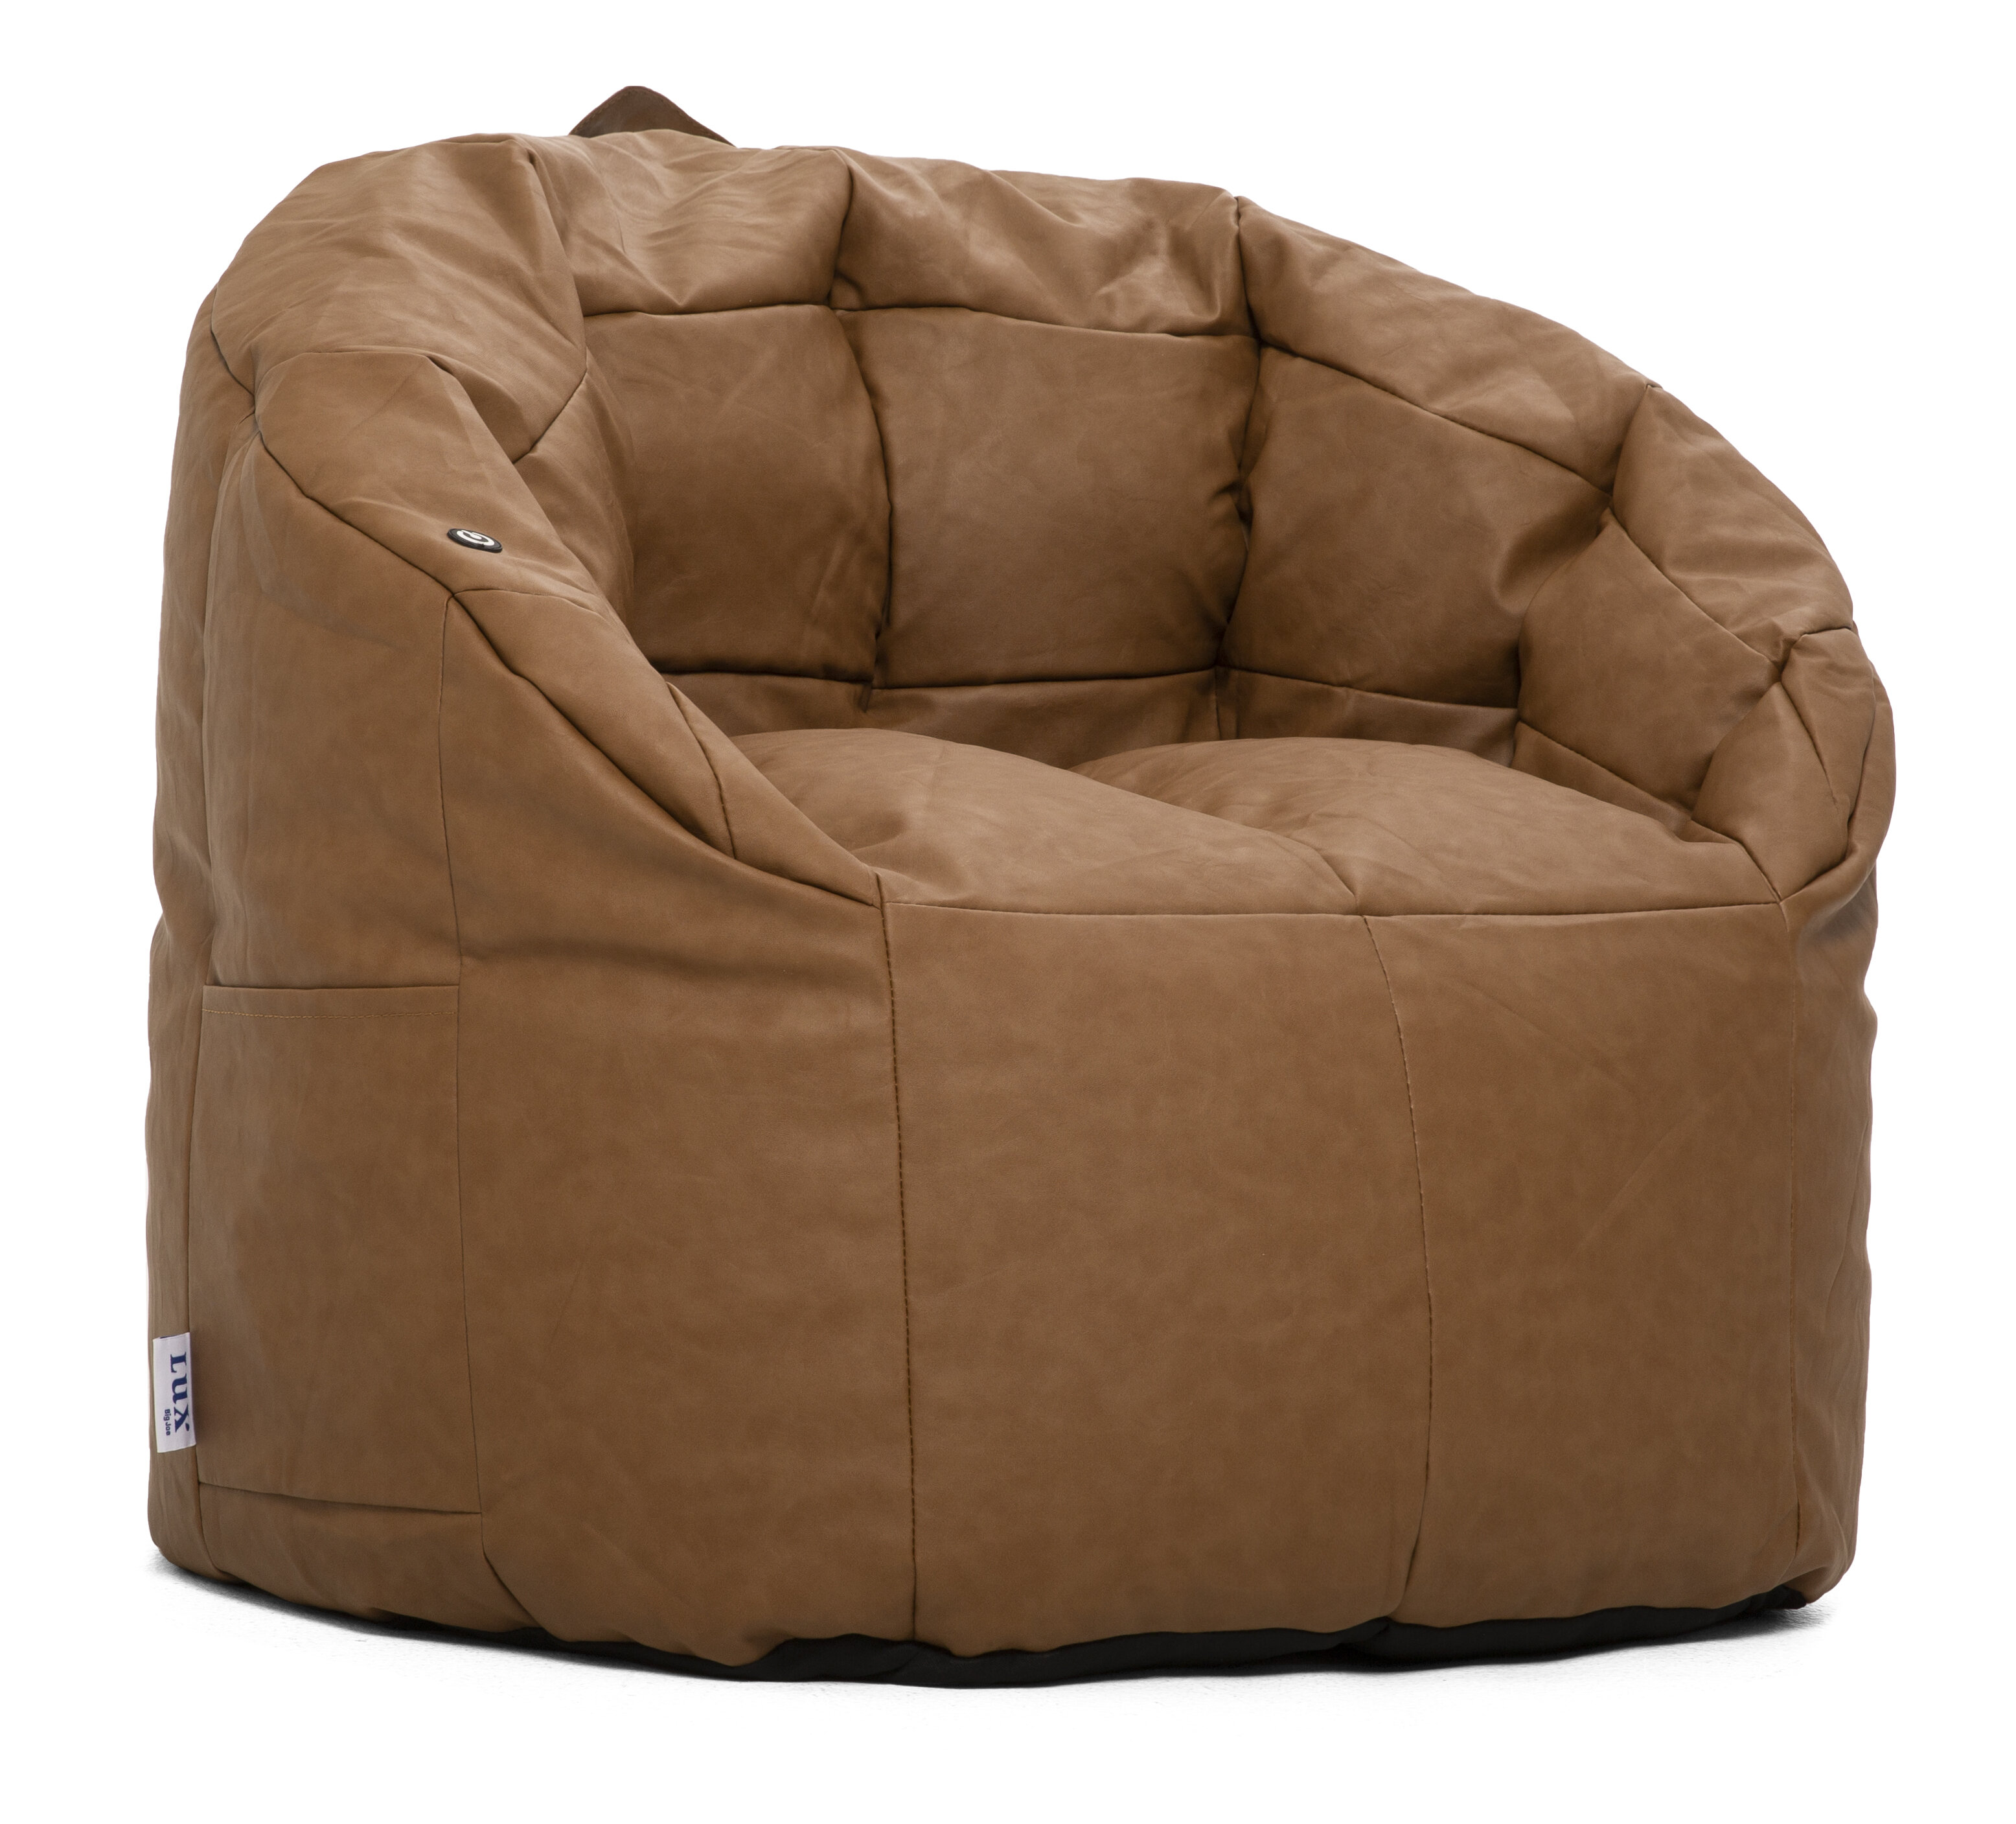 Comfort Research Big Joe Milano Vibe Standard Bean Bag Chair Reviews Wayfair